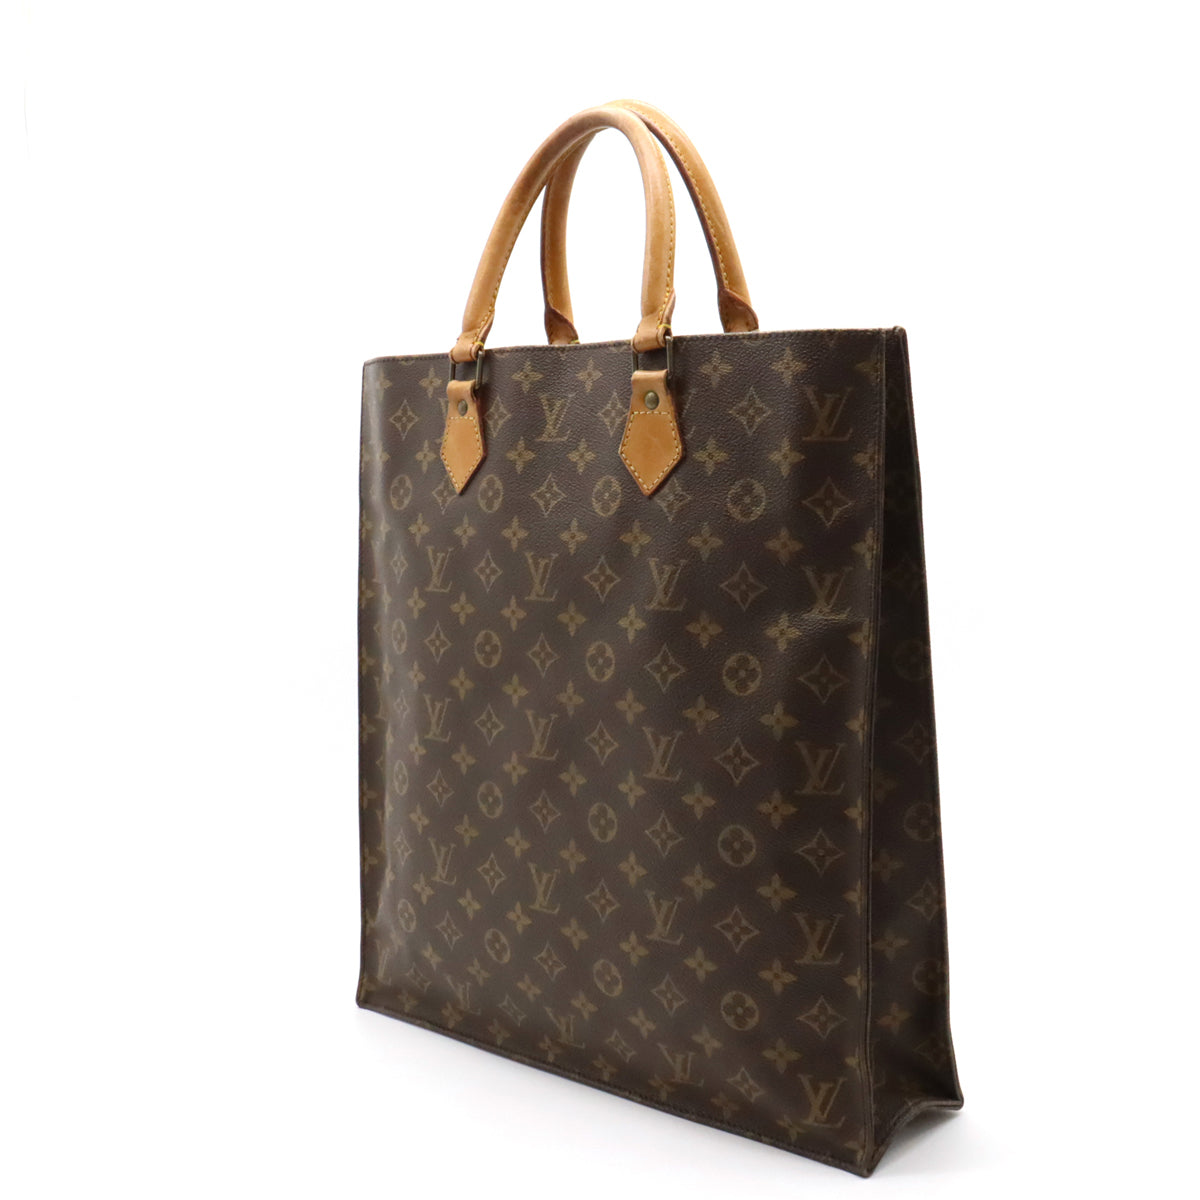 Louis Vuitton Authentic Vintage Iconic Sac Plat Tote Bag Mint Condition